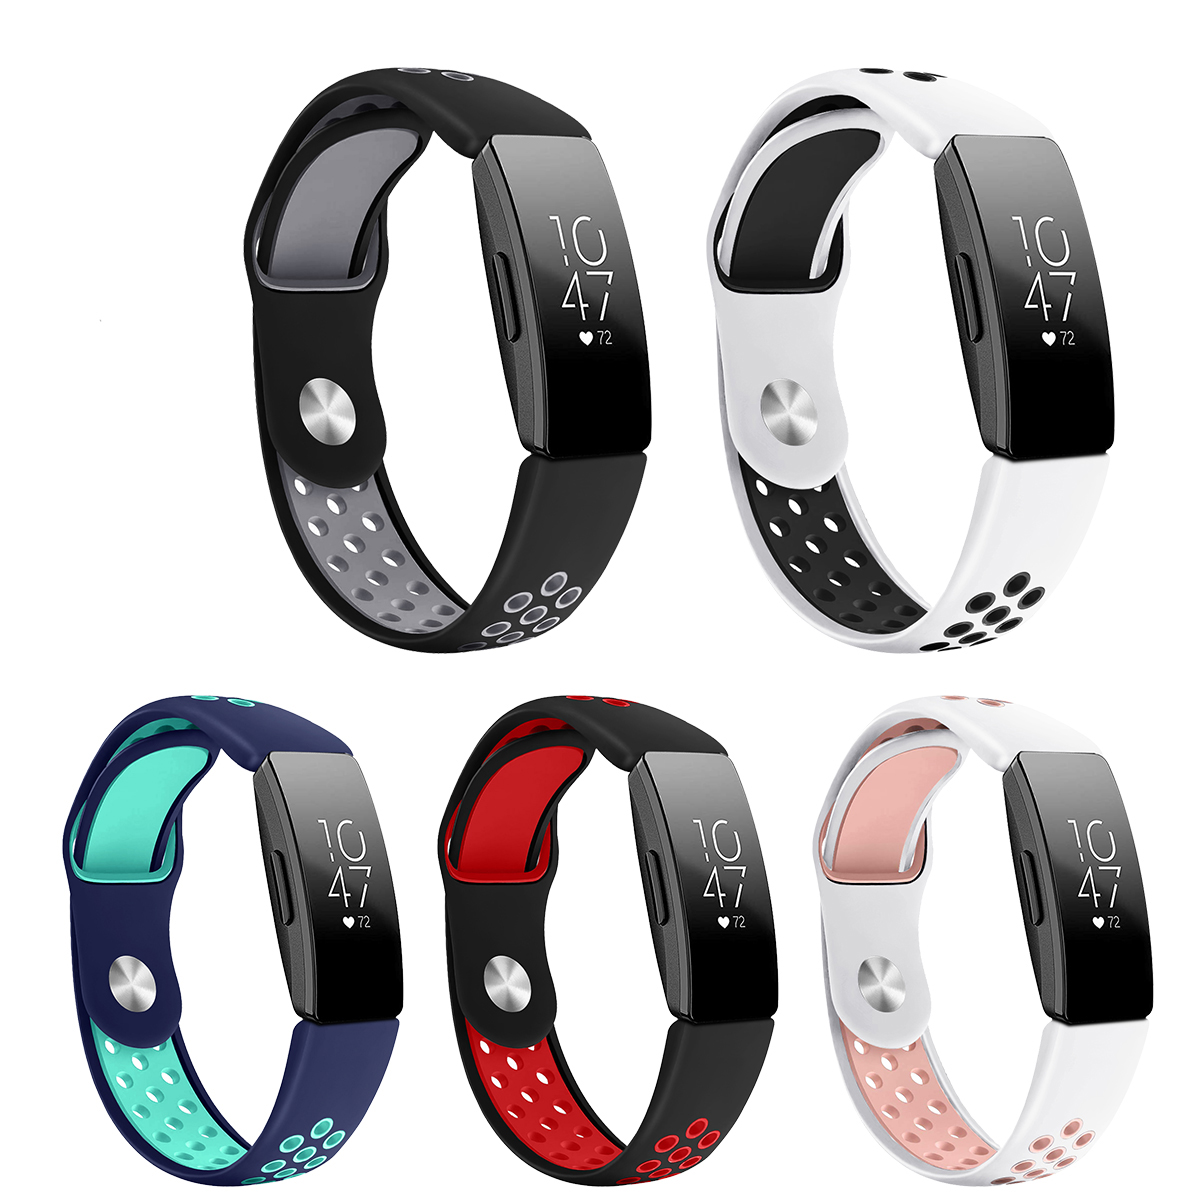 

Bakeey Double Color Ремень Сменные часы TPU Стандарты для Fitbit Inspire / Inspire HR Smart Watch